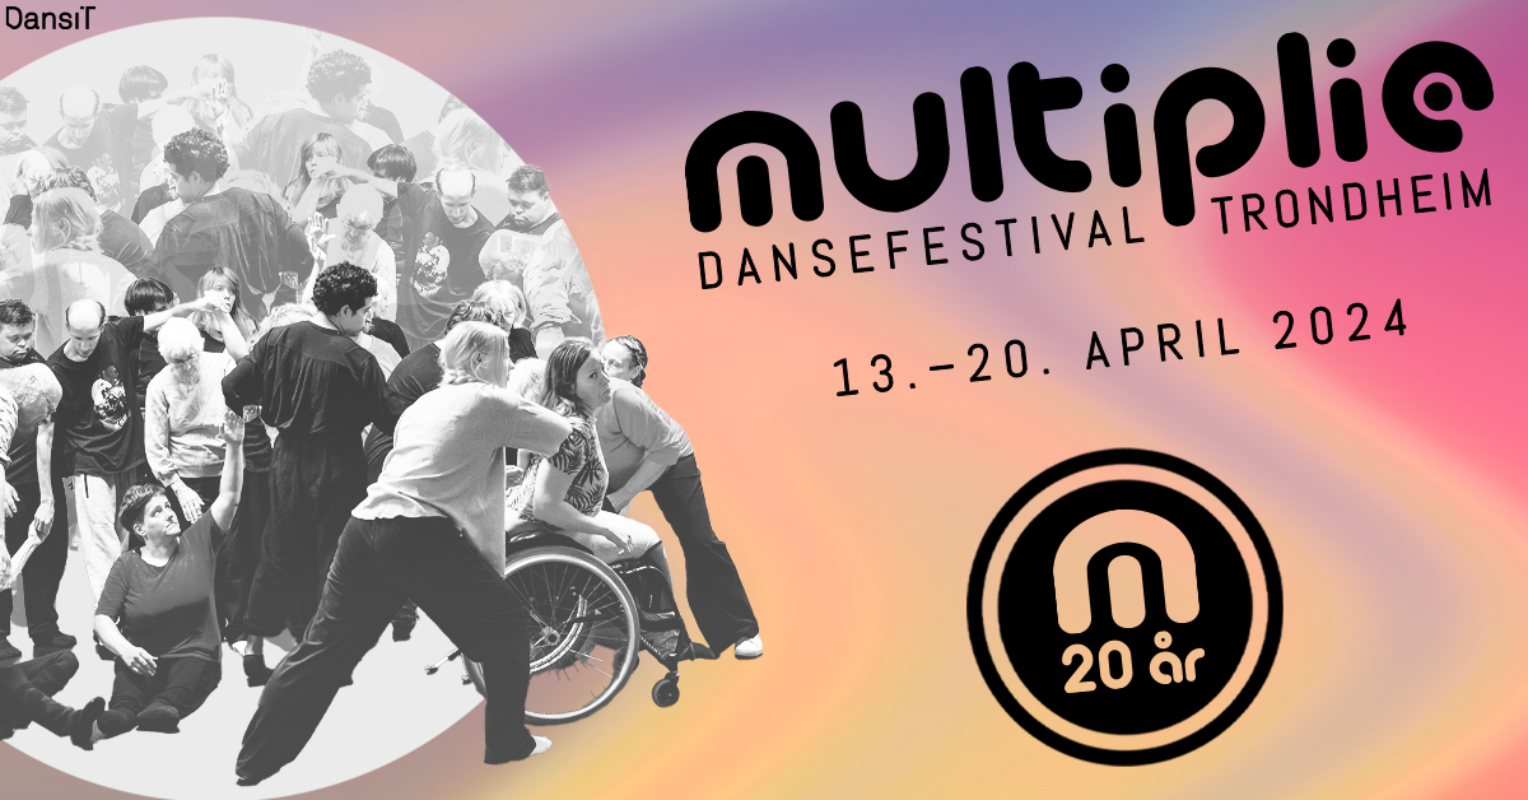 Multiplié dansefestival 2024, 13. - 20. april 2024 i Trondheim